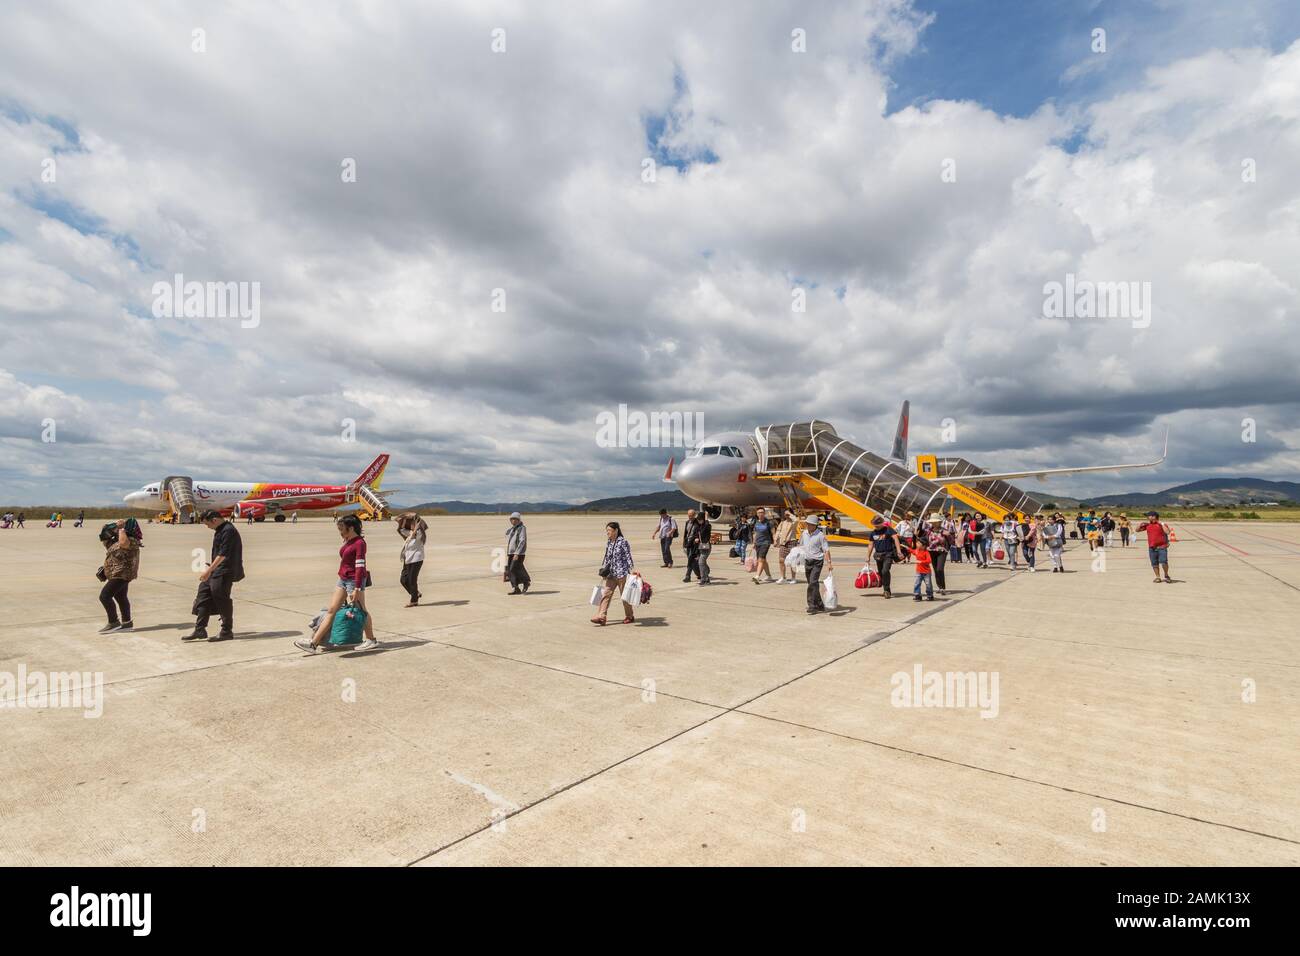 Da Lat, Vietnam - 23 de enero de 2018: La gente está dejando un avión que acaba de aterrizar Foto de stock